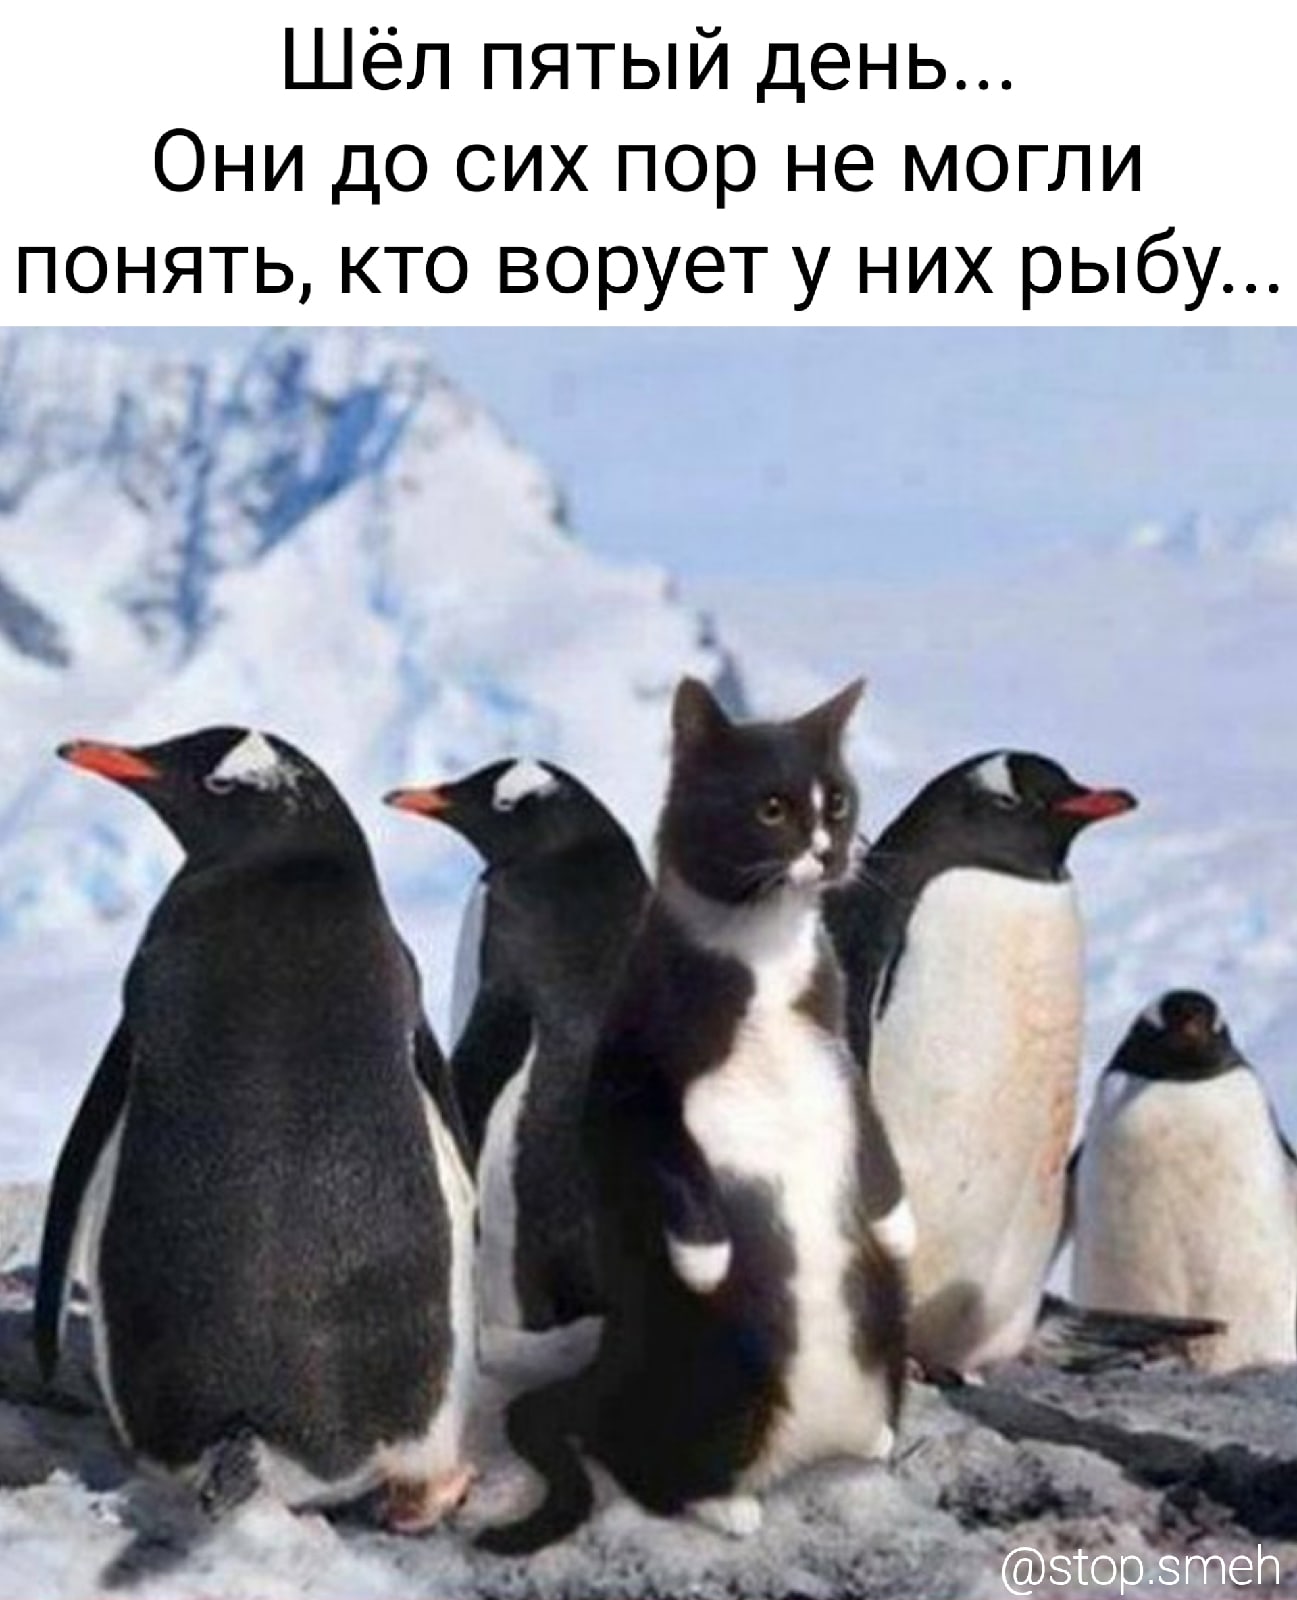 Пингвины не могут понять кто ворует у них рыбу